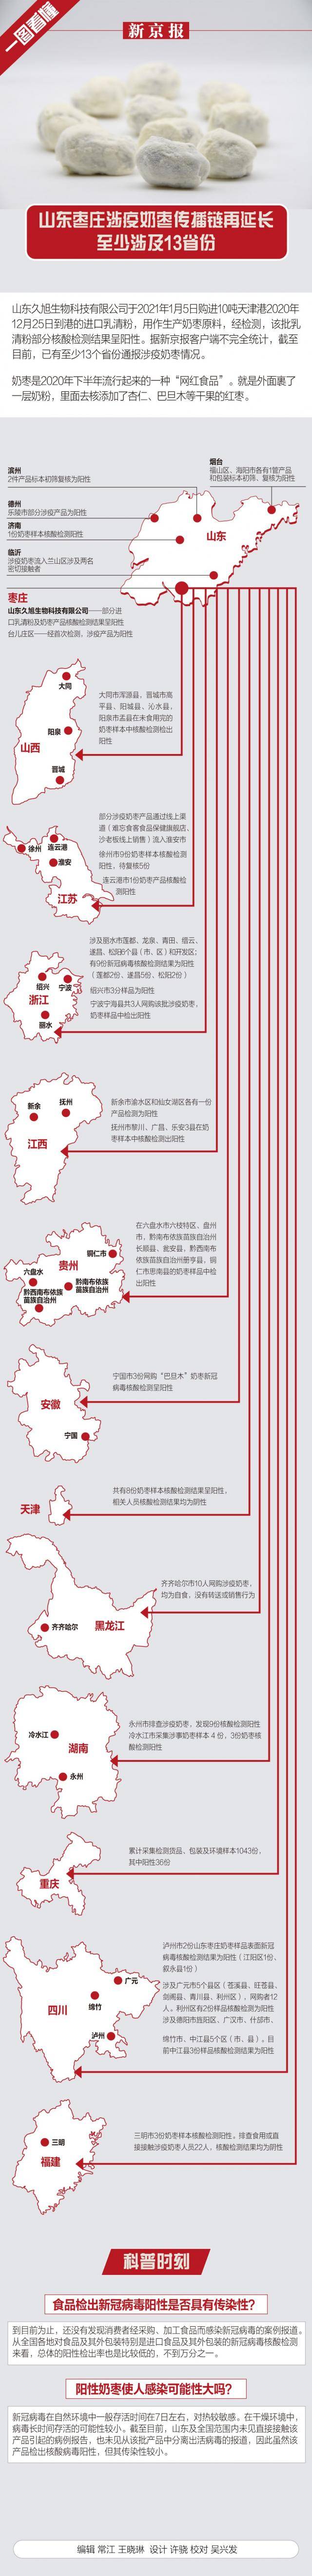 山东枣庄涉疫奶枣传播链再延长 至少涉及13省份